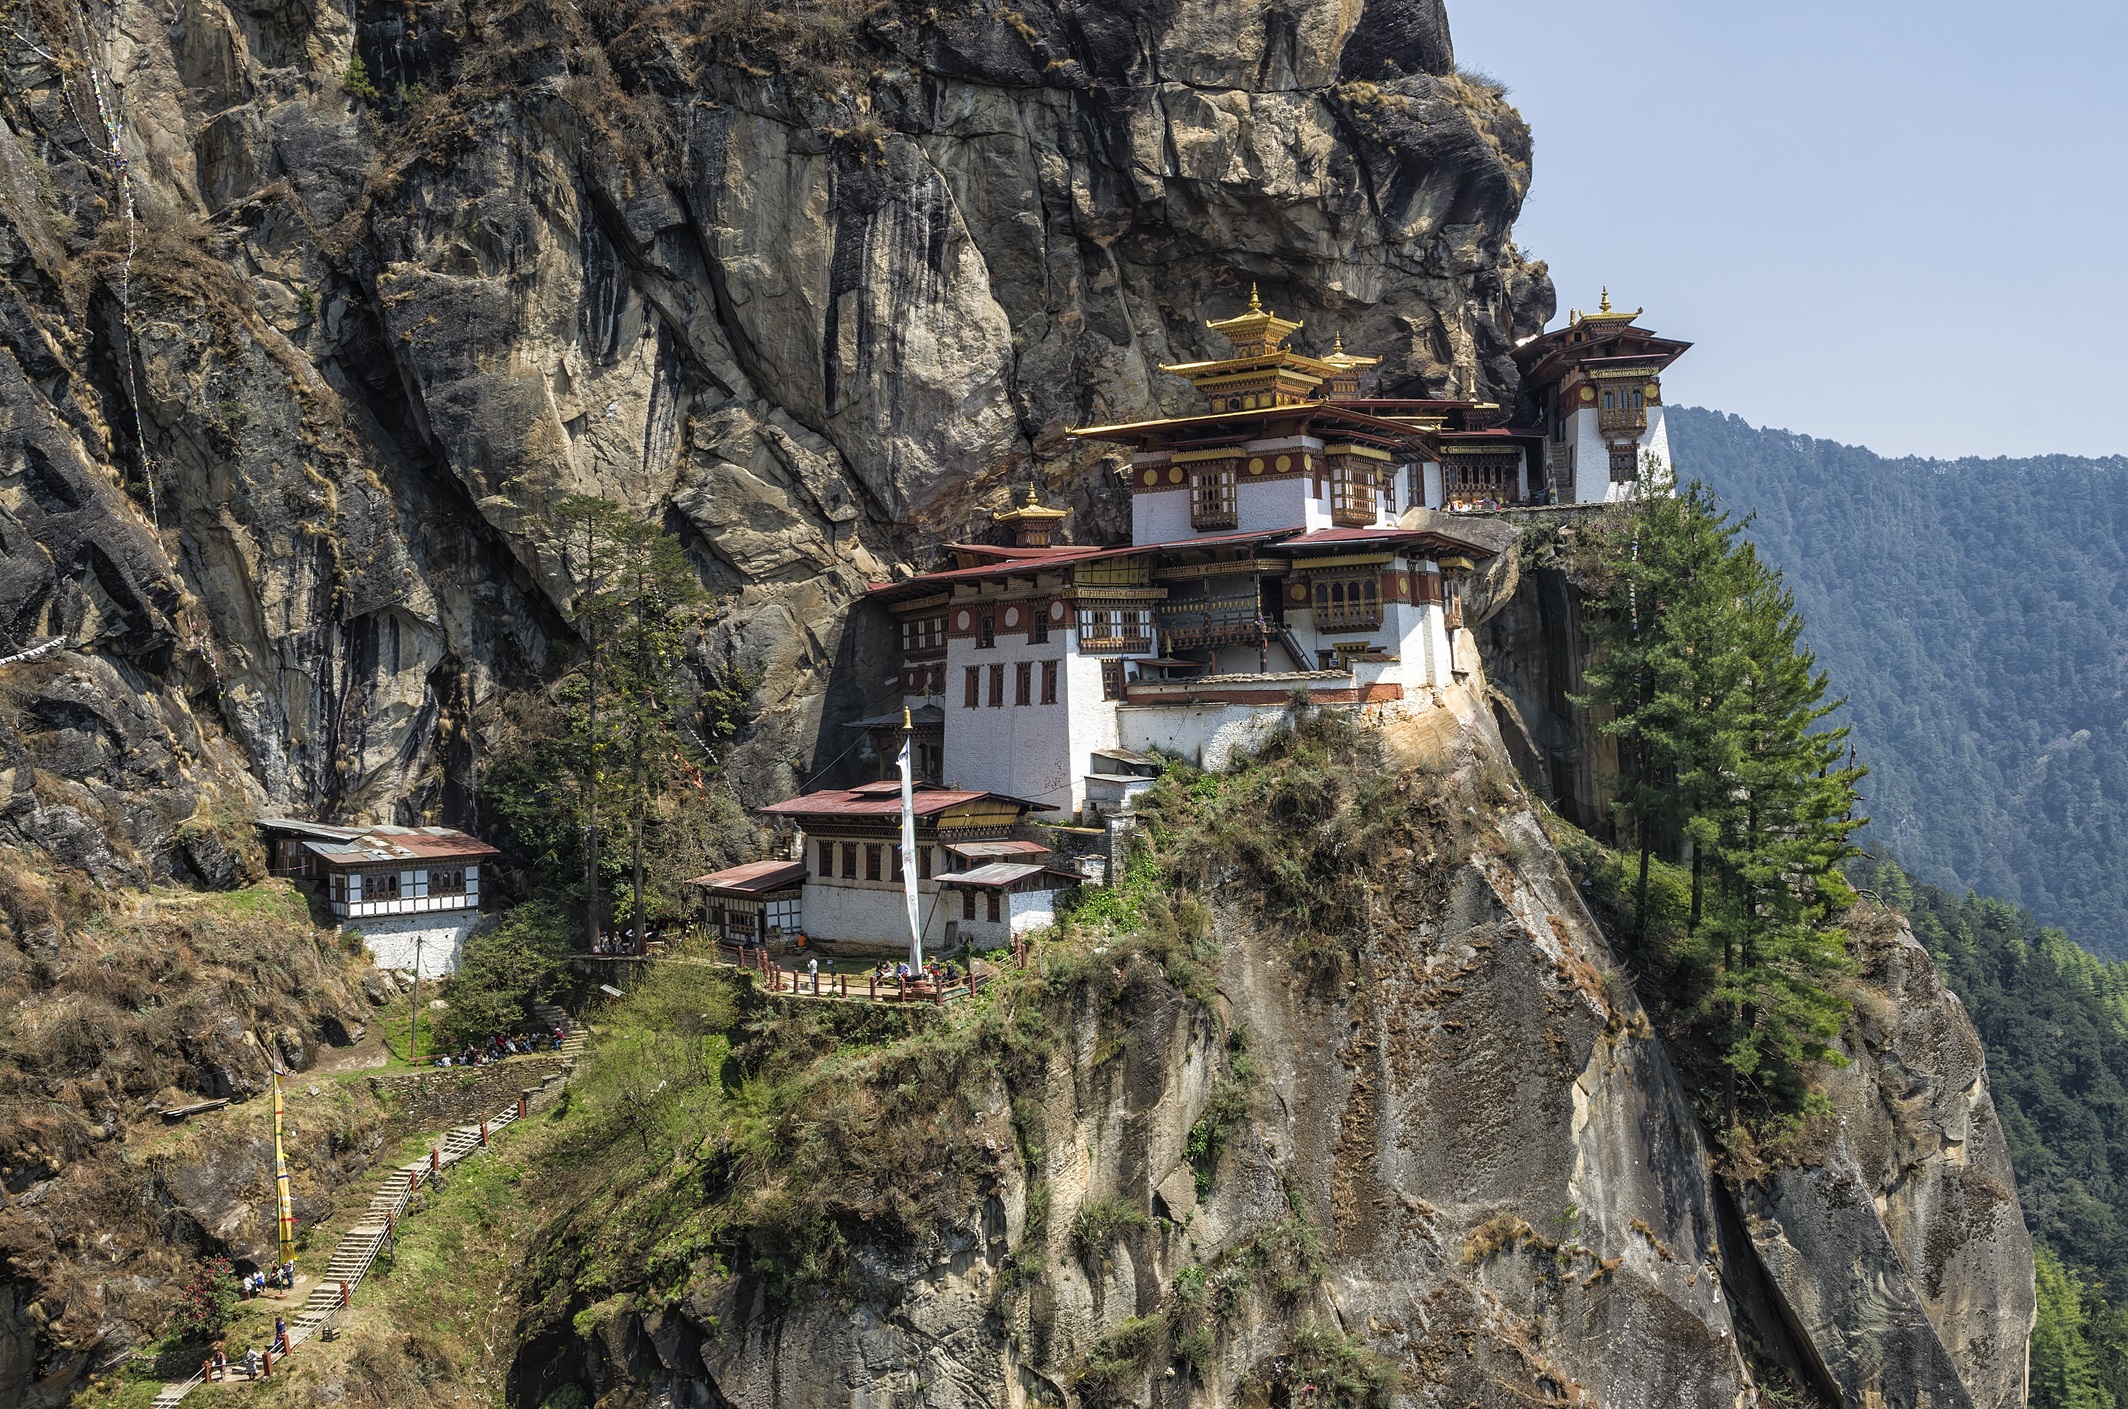 Манастирът „Тигрово гнездо“ (Бутан) – Манастирът е издигнат през 1692 г. Скалата, върху която лежи, се намира на 3100 м. надморска височина. Според легендата манастирът е построен около пещера, в която гуру Падмасамбхава е медитиал три години, три месеца и три часа през VIII в.